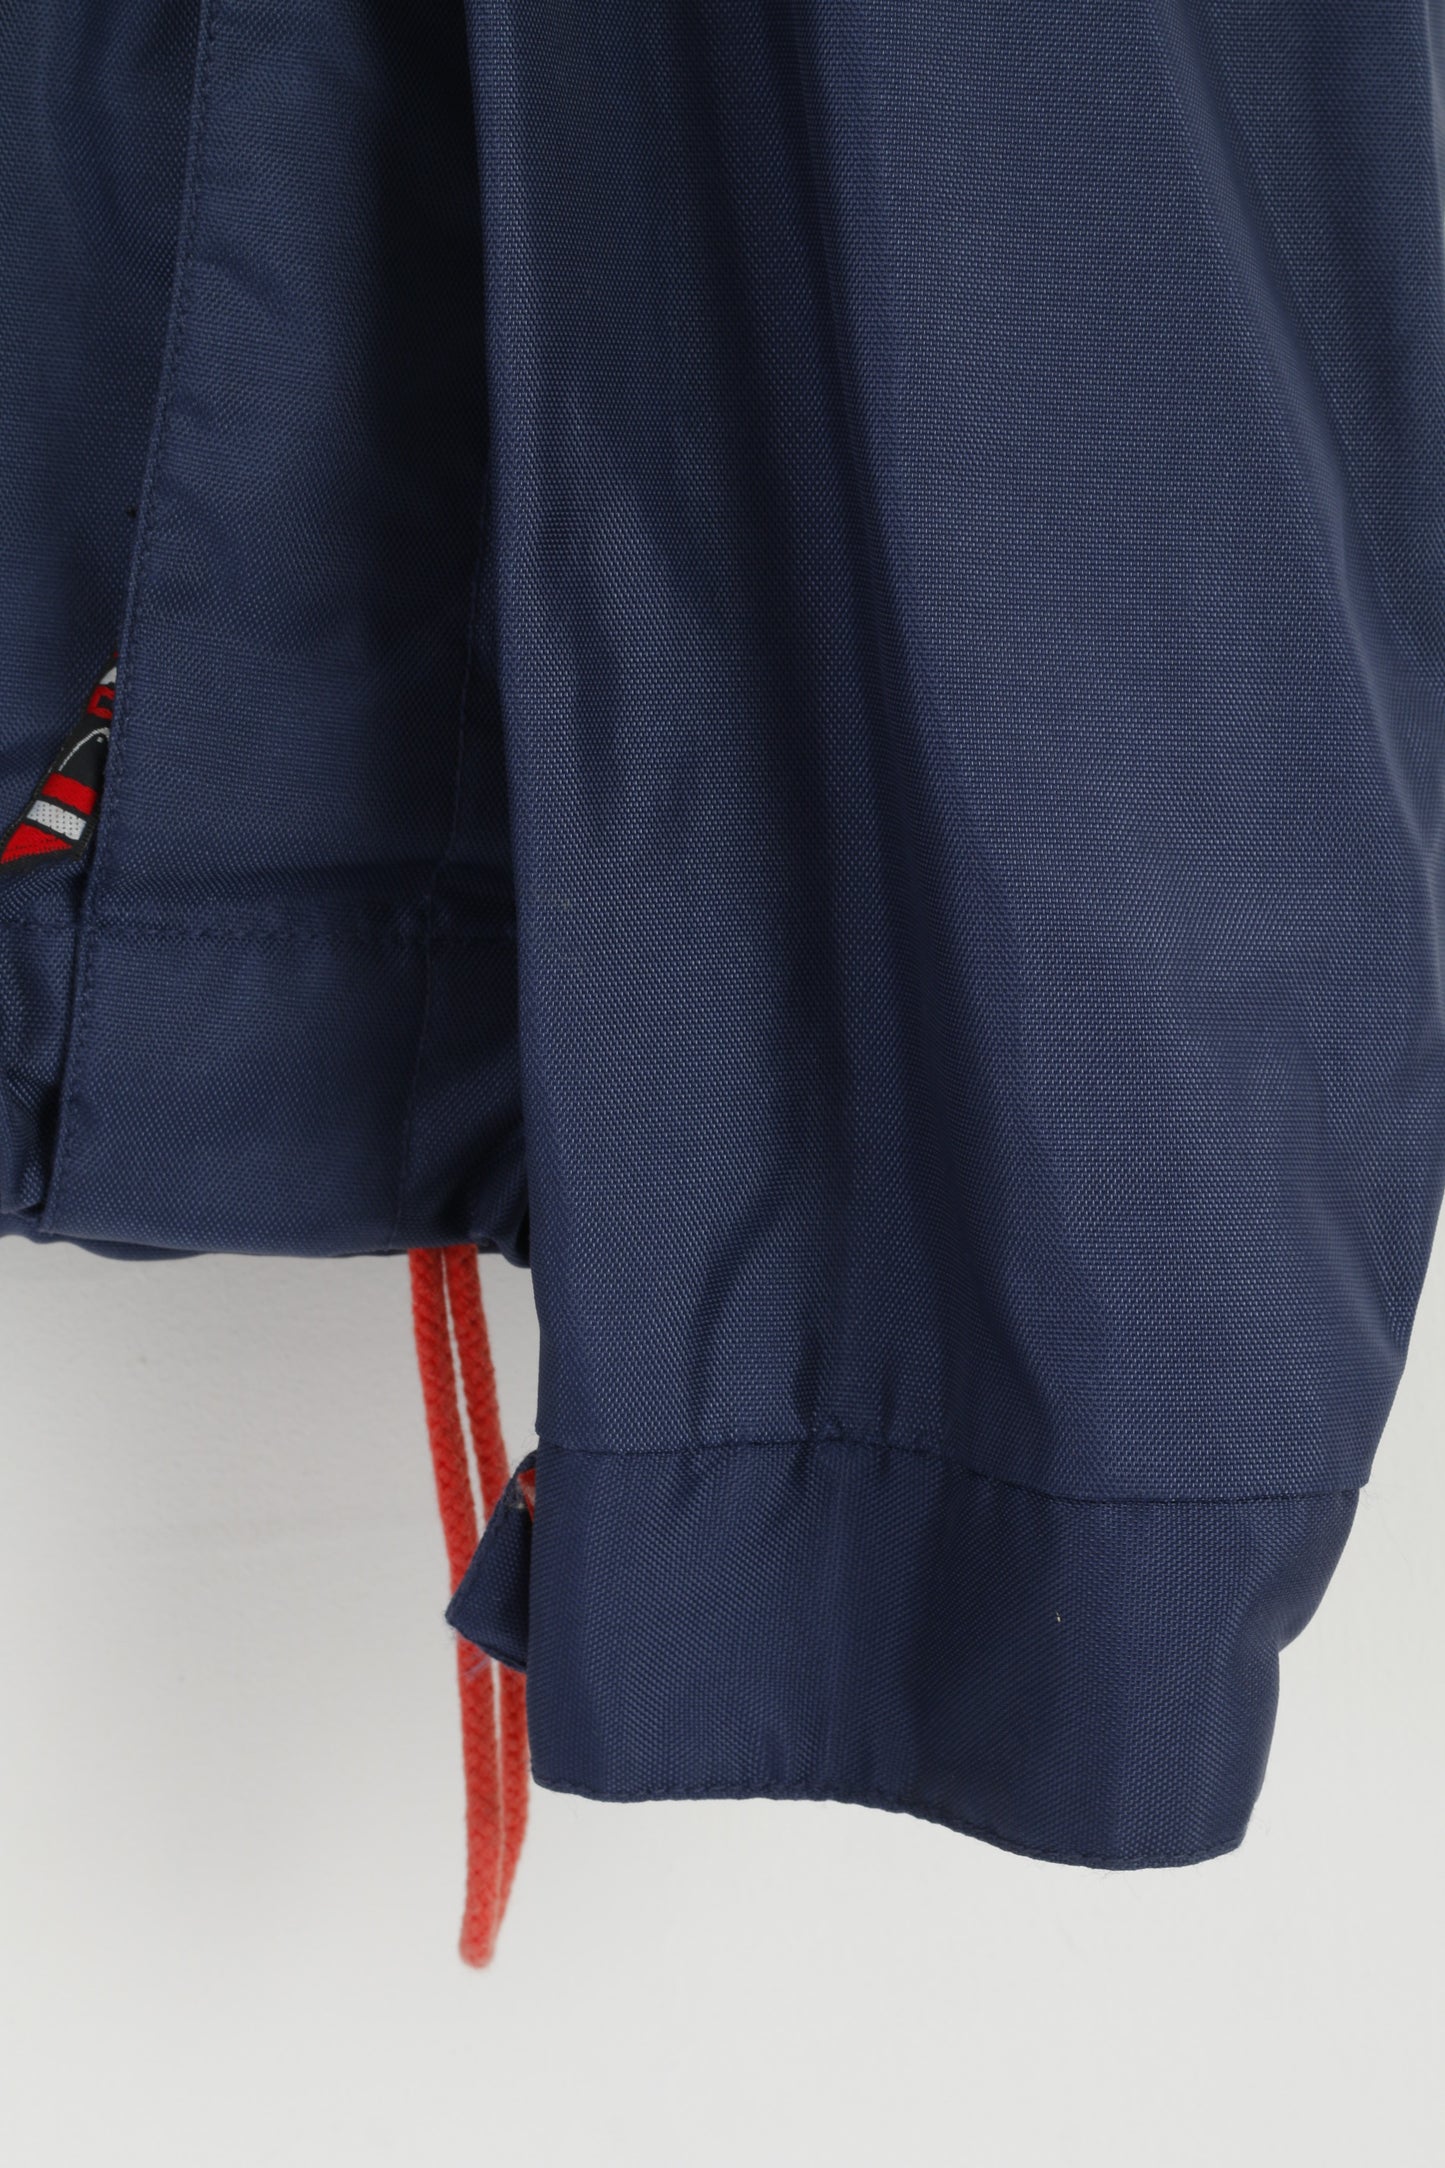 Giacca Head da uomo XL in nylon blu sportivo con cappuccio nascosto impermeabile top vintage